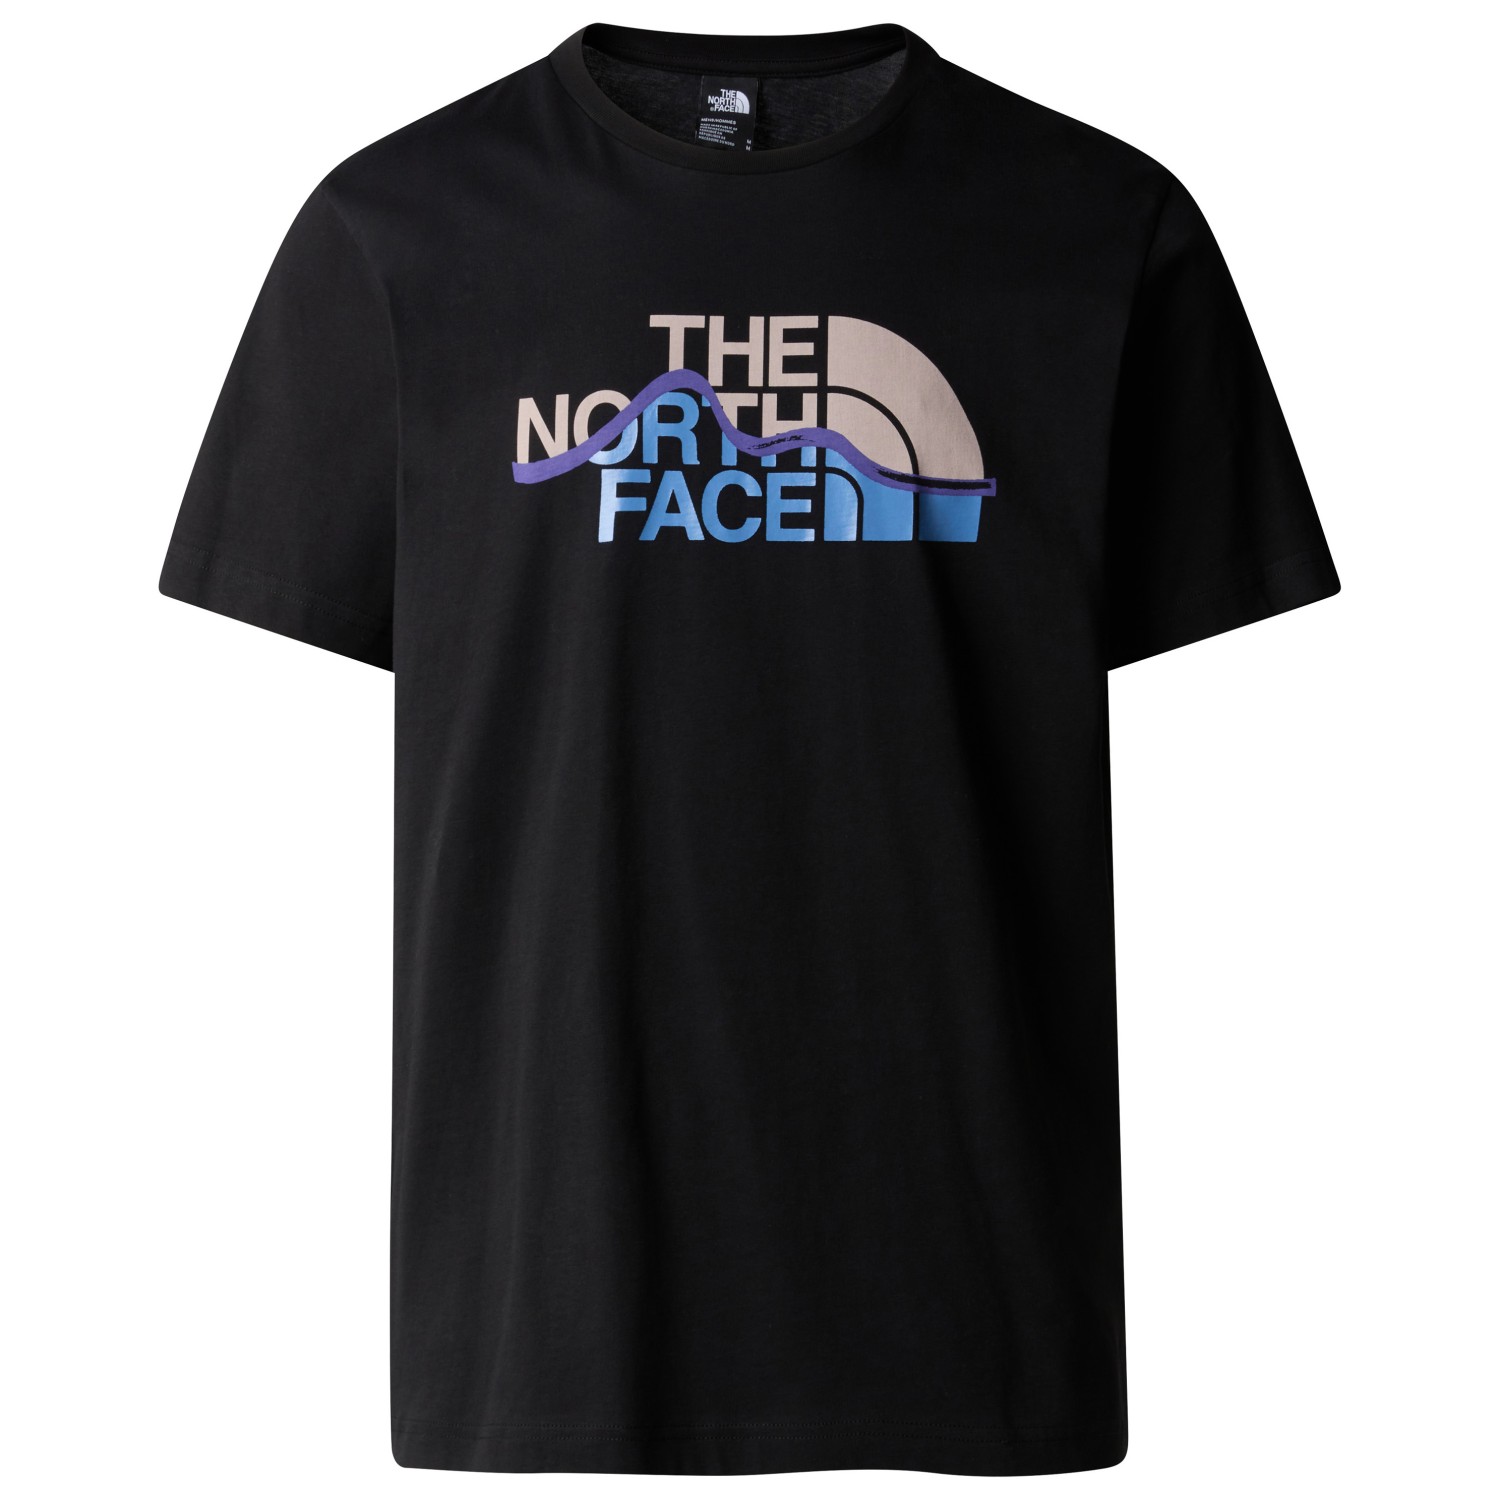 футболка the north face s s mountain line tee цвет tnf black Футболка The North Face S/S Mountain Line Tee, цвет TNF Black